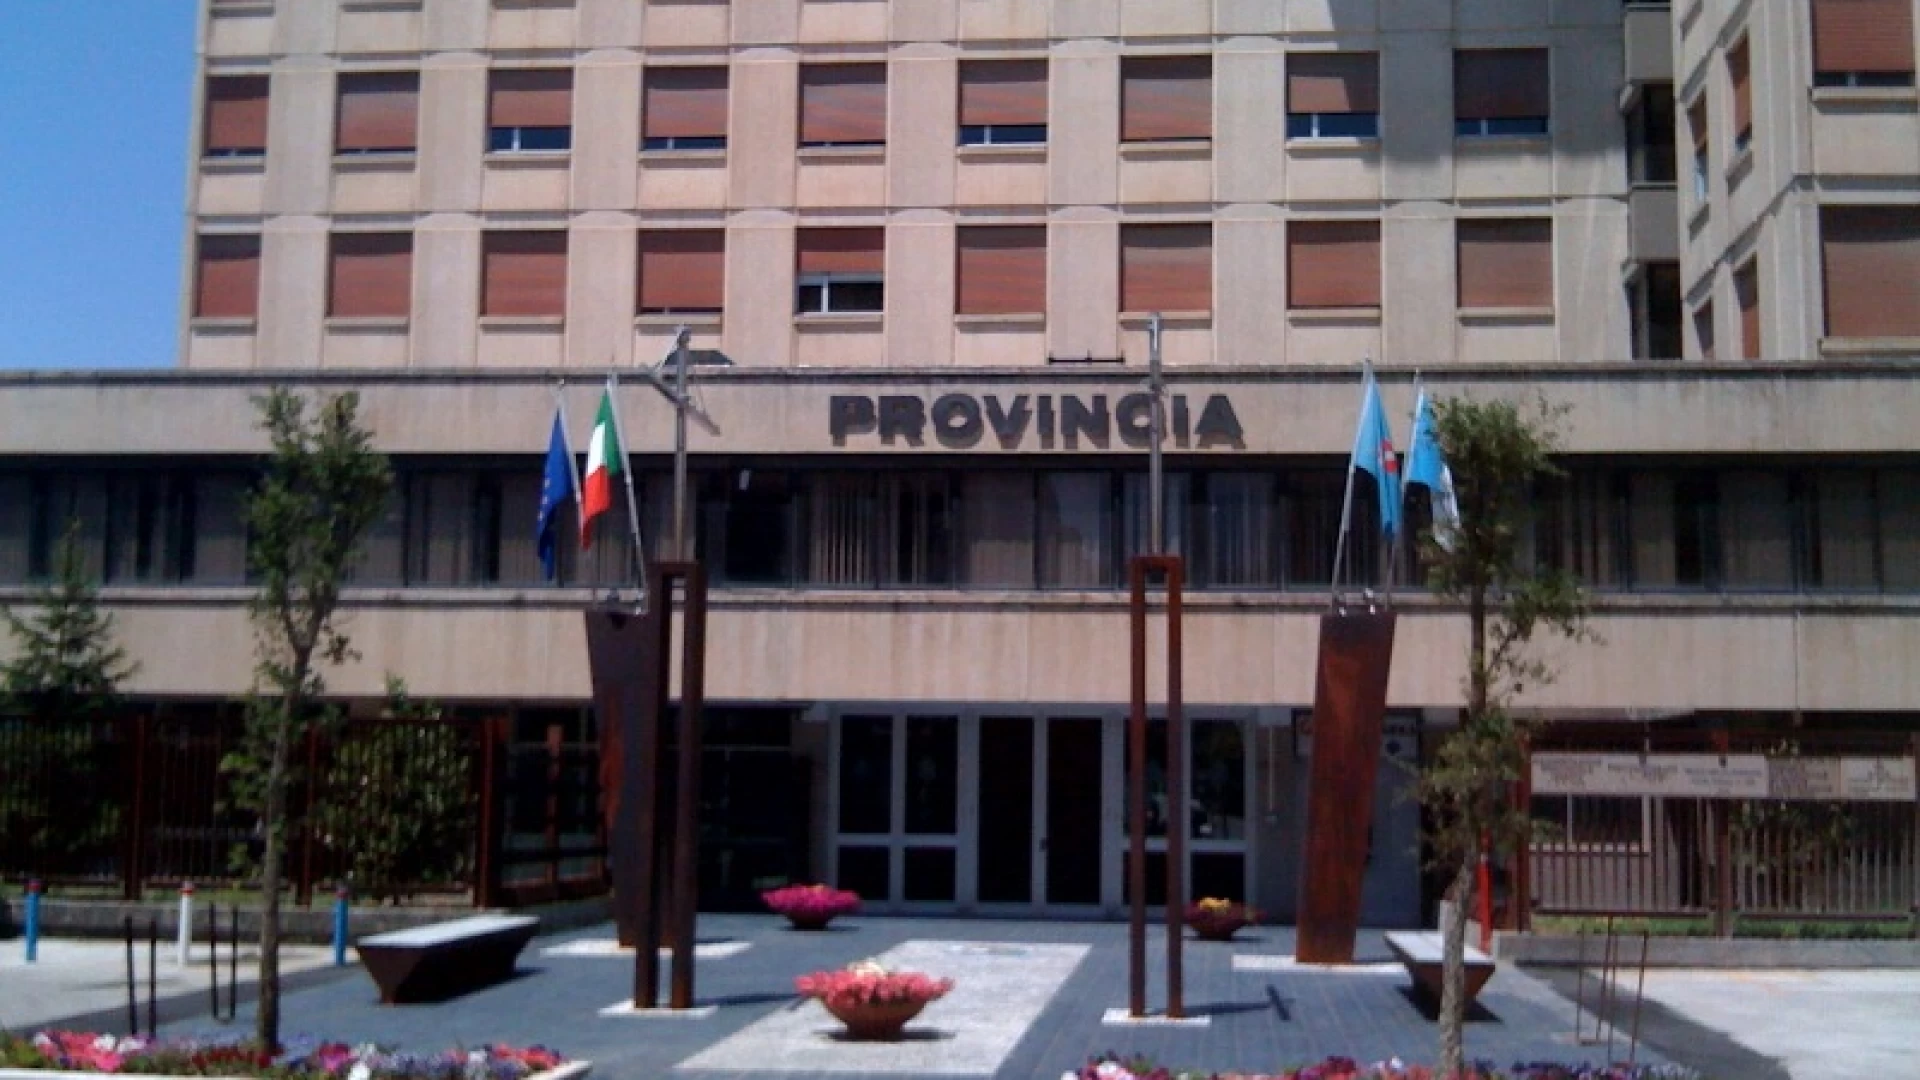 Elezioni Provinciali Isernia, la commissione elettorale esclude la lista del centrodestra